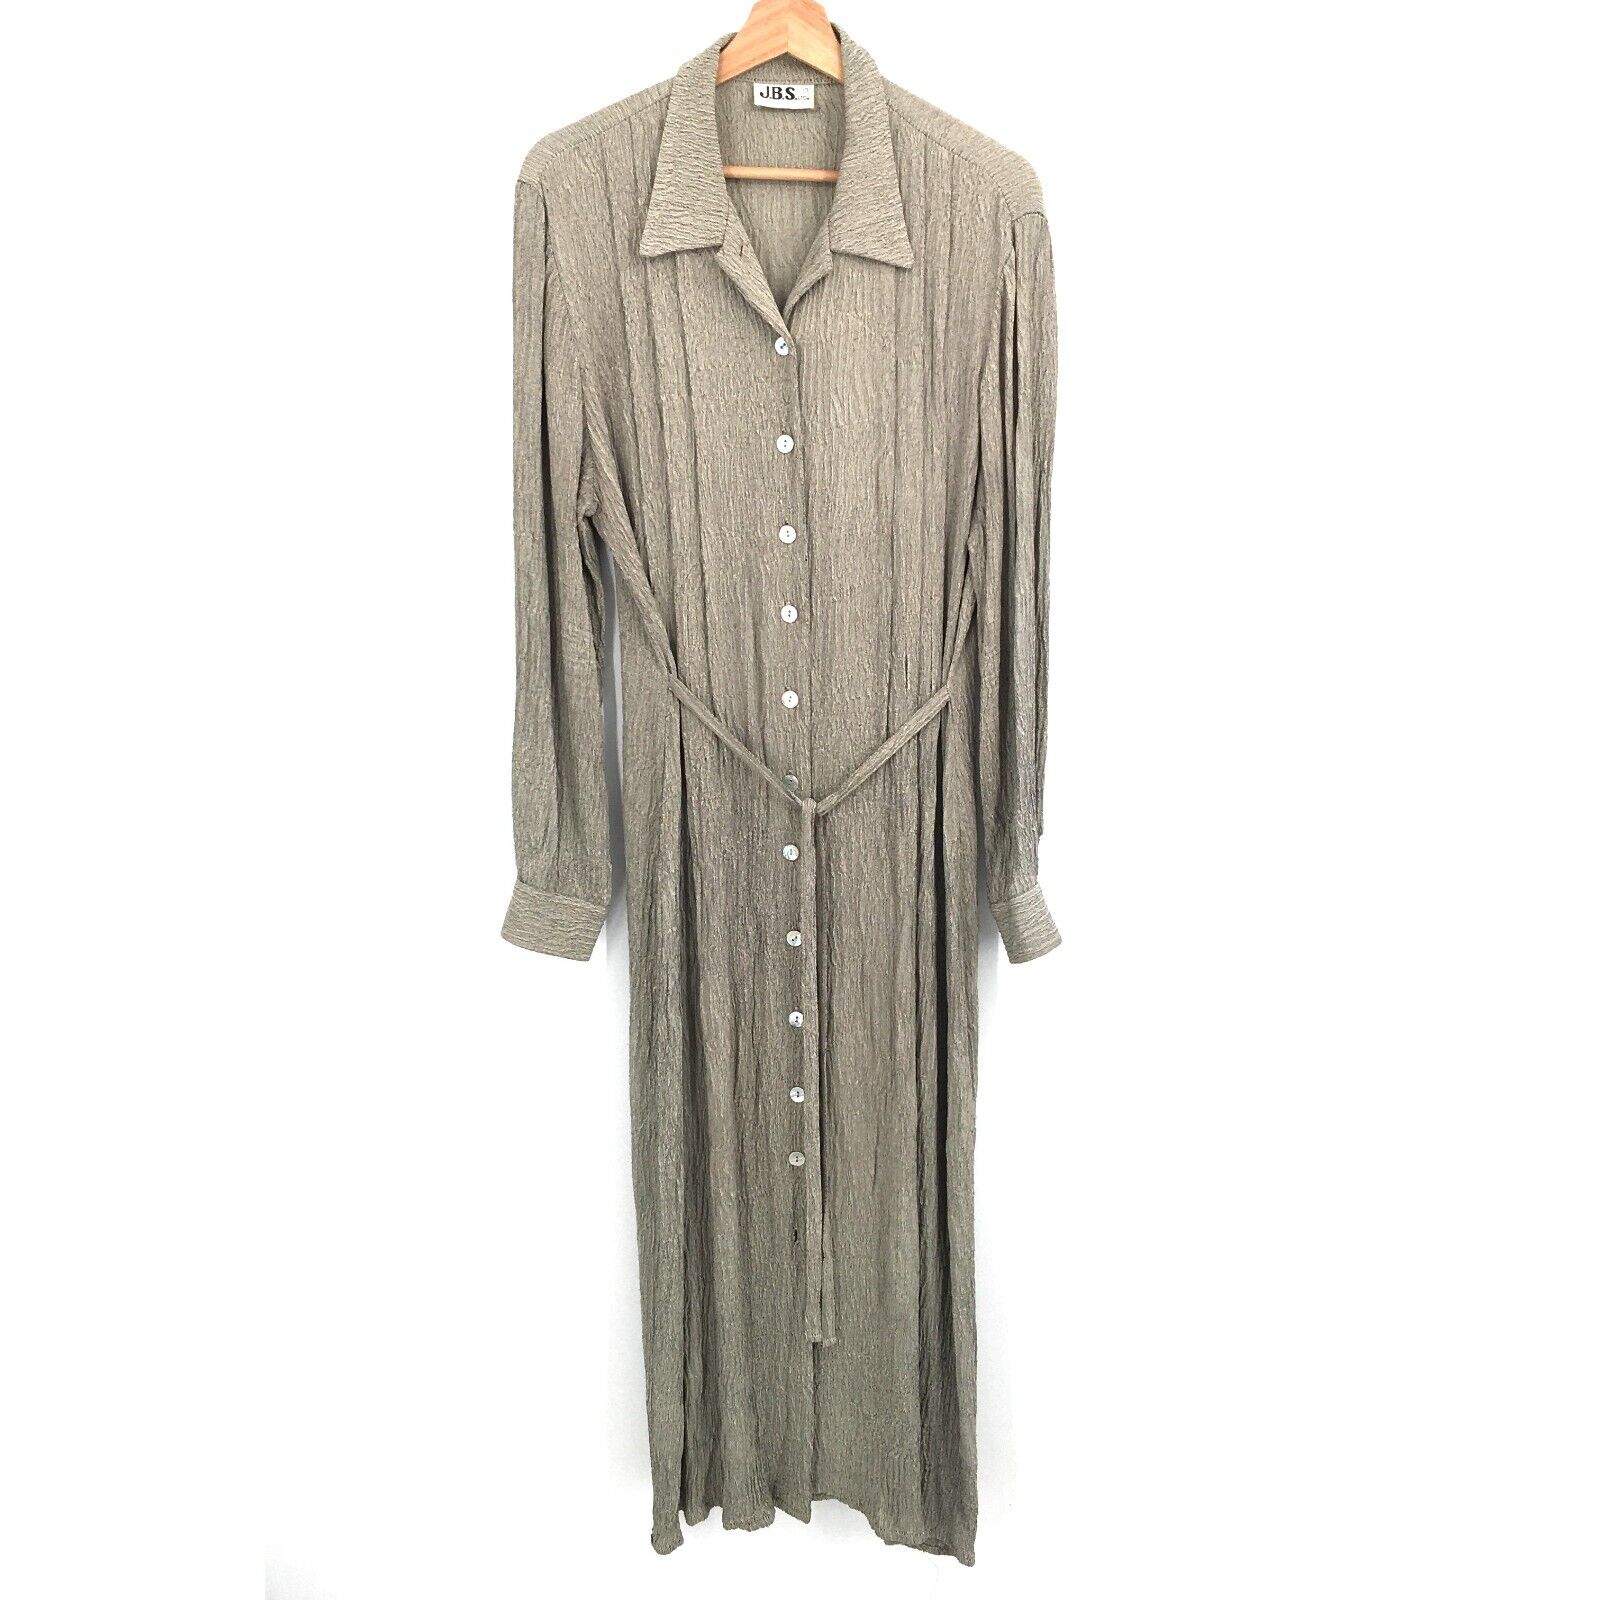 vintage 90s J.B.S LTD button front crinkle shirt dress pleated cottagecore tan L